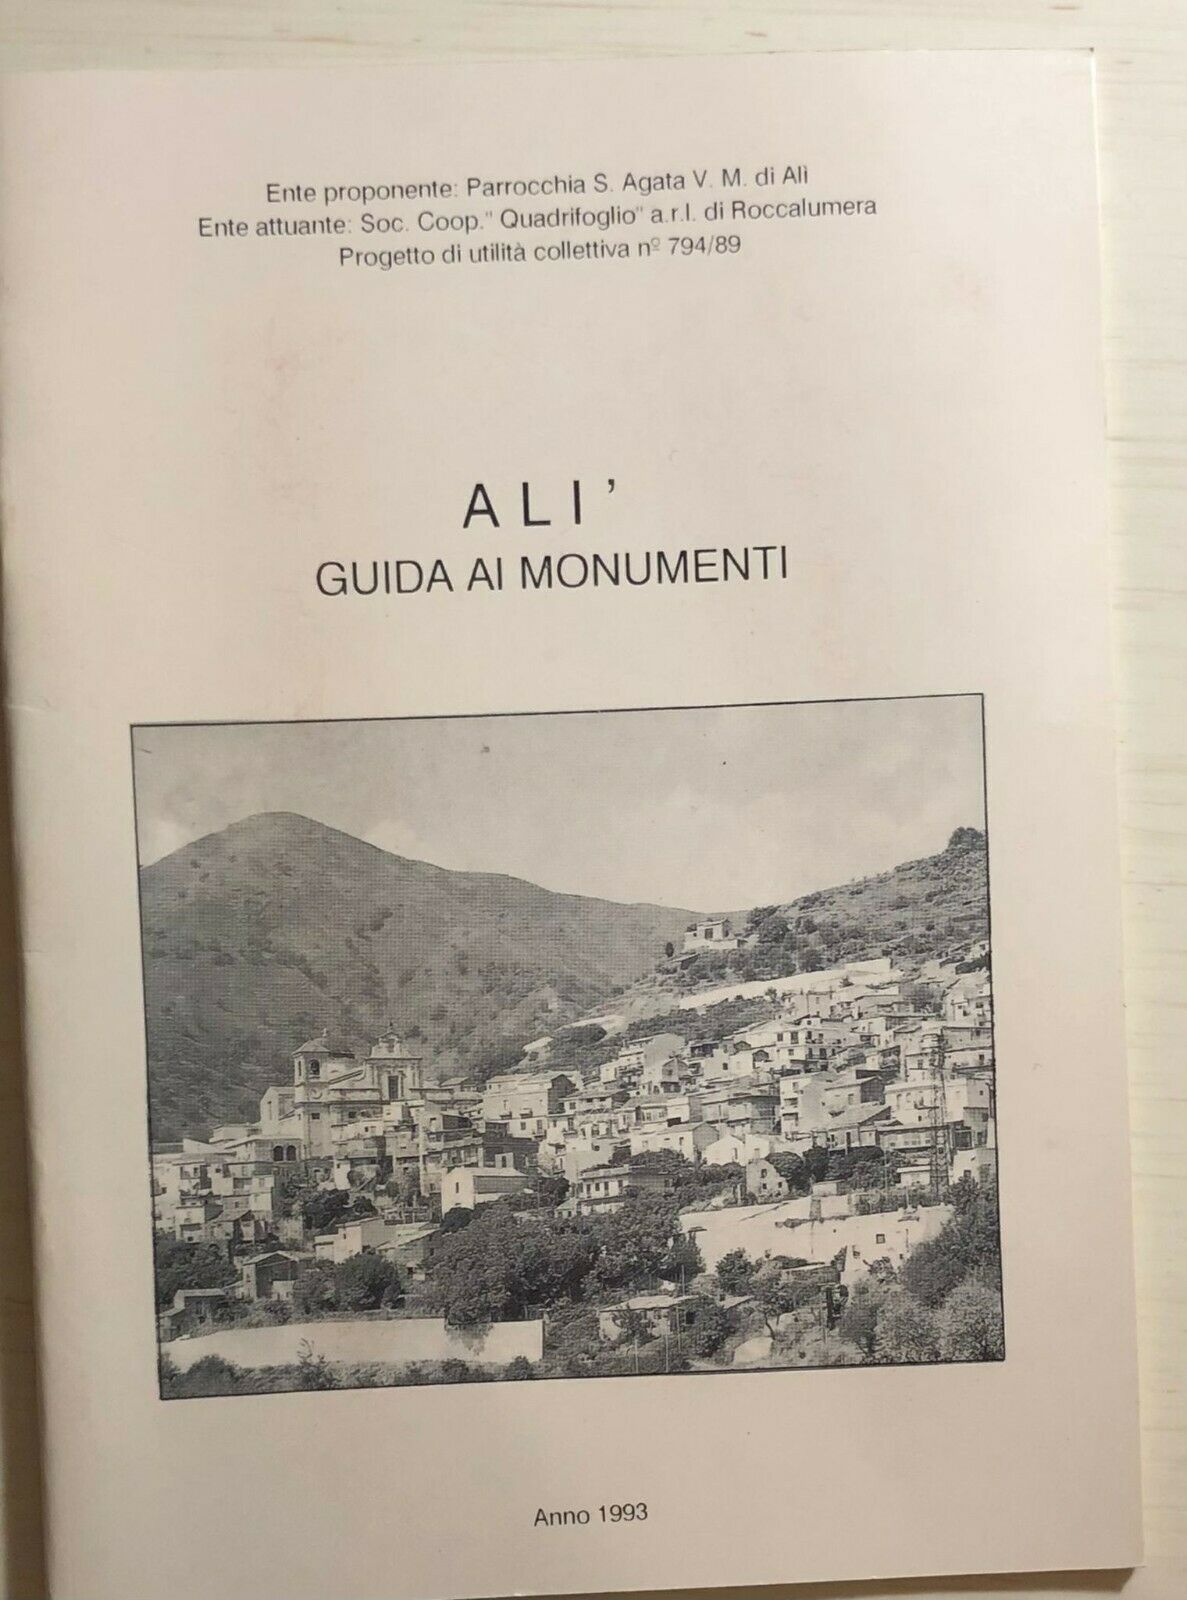 Al?, guida ai monumenti di Aa.vv., 1993, Soc. Coop. Quadrifoglio Roccalumera